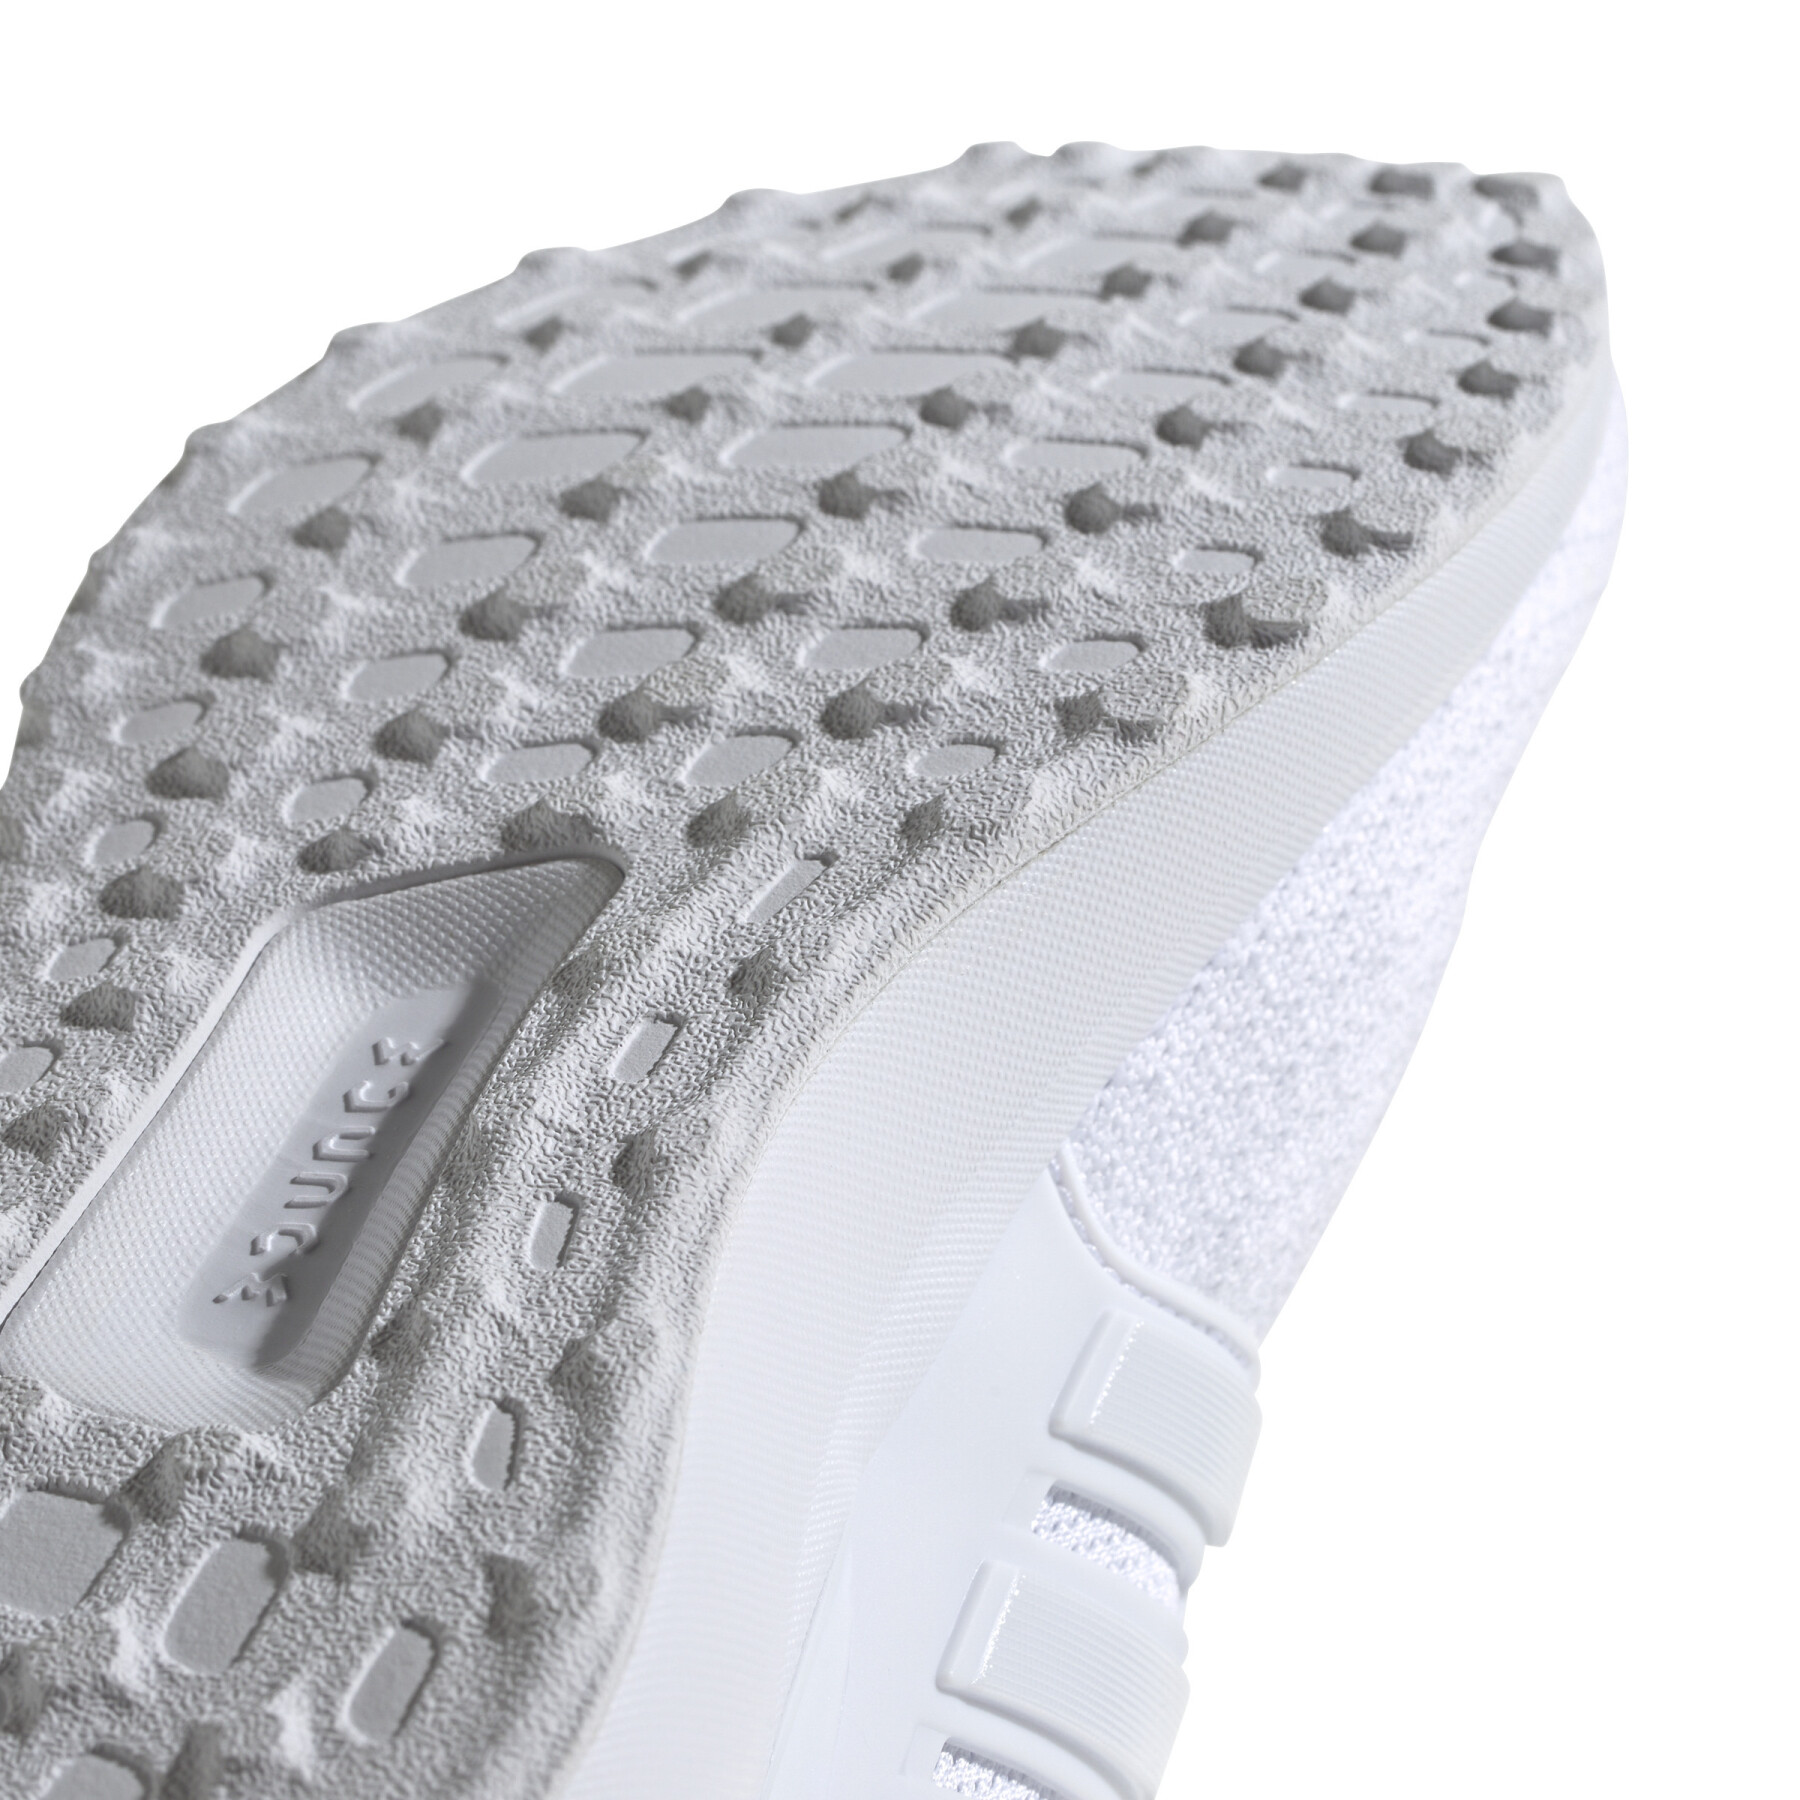 Women's sneakers adidas Ubounce DNA